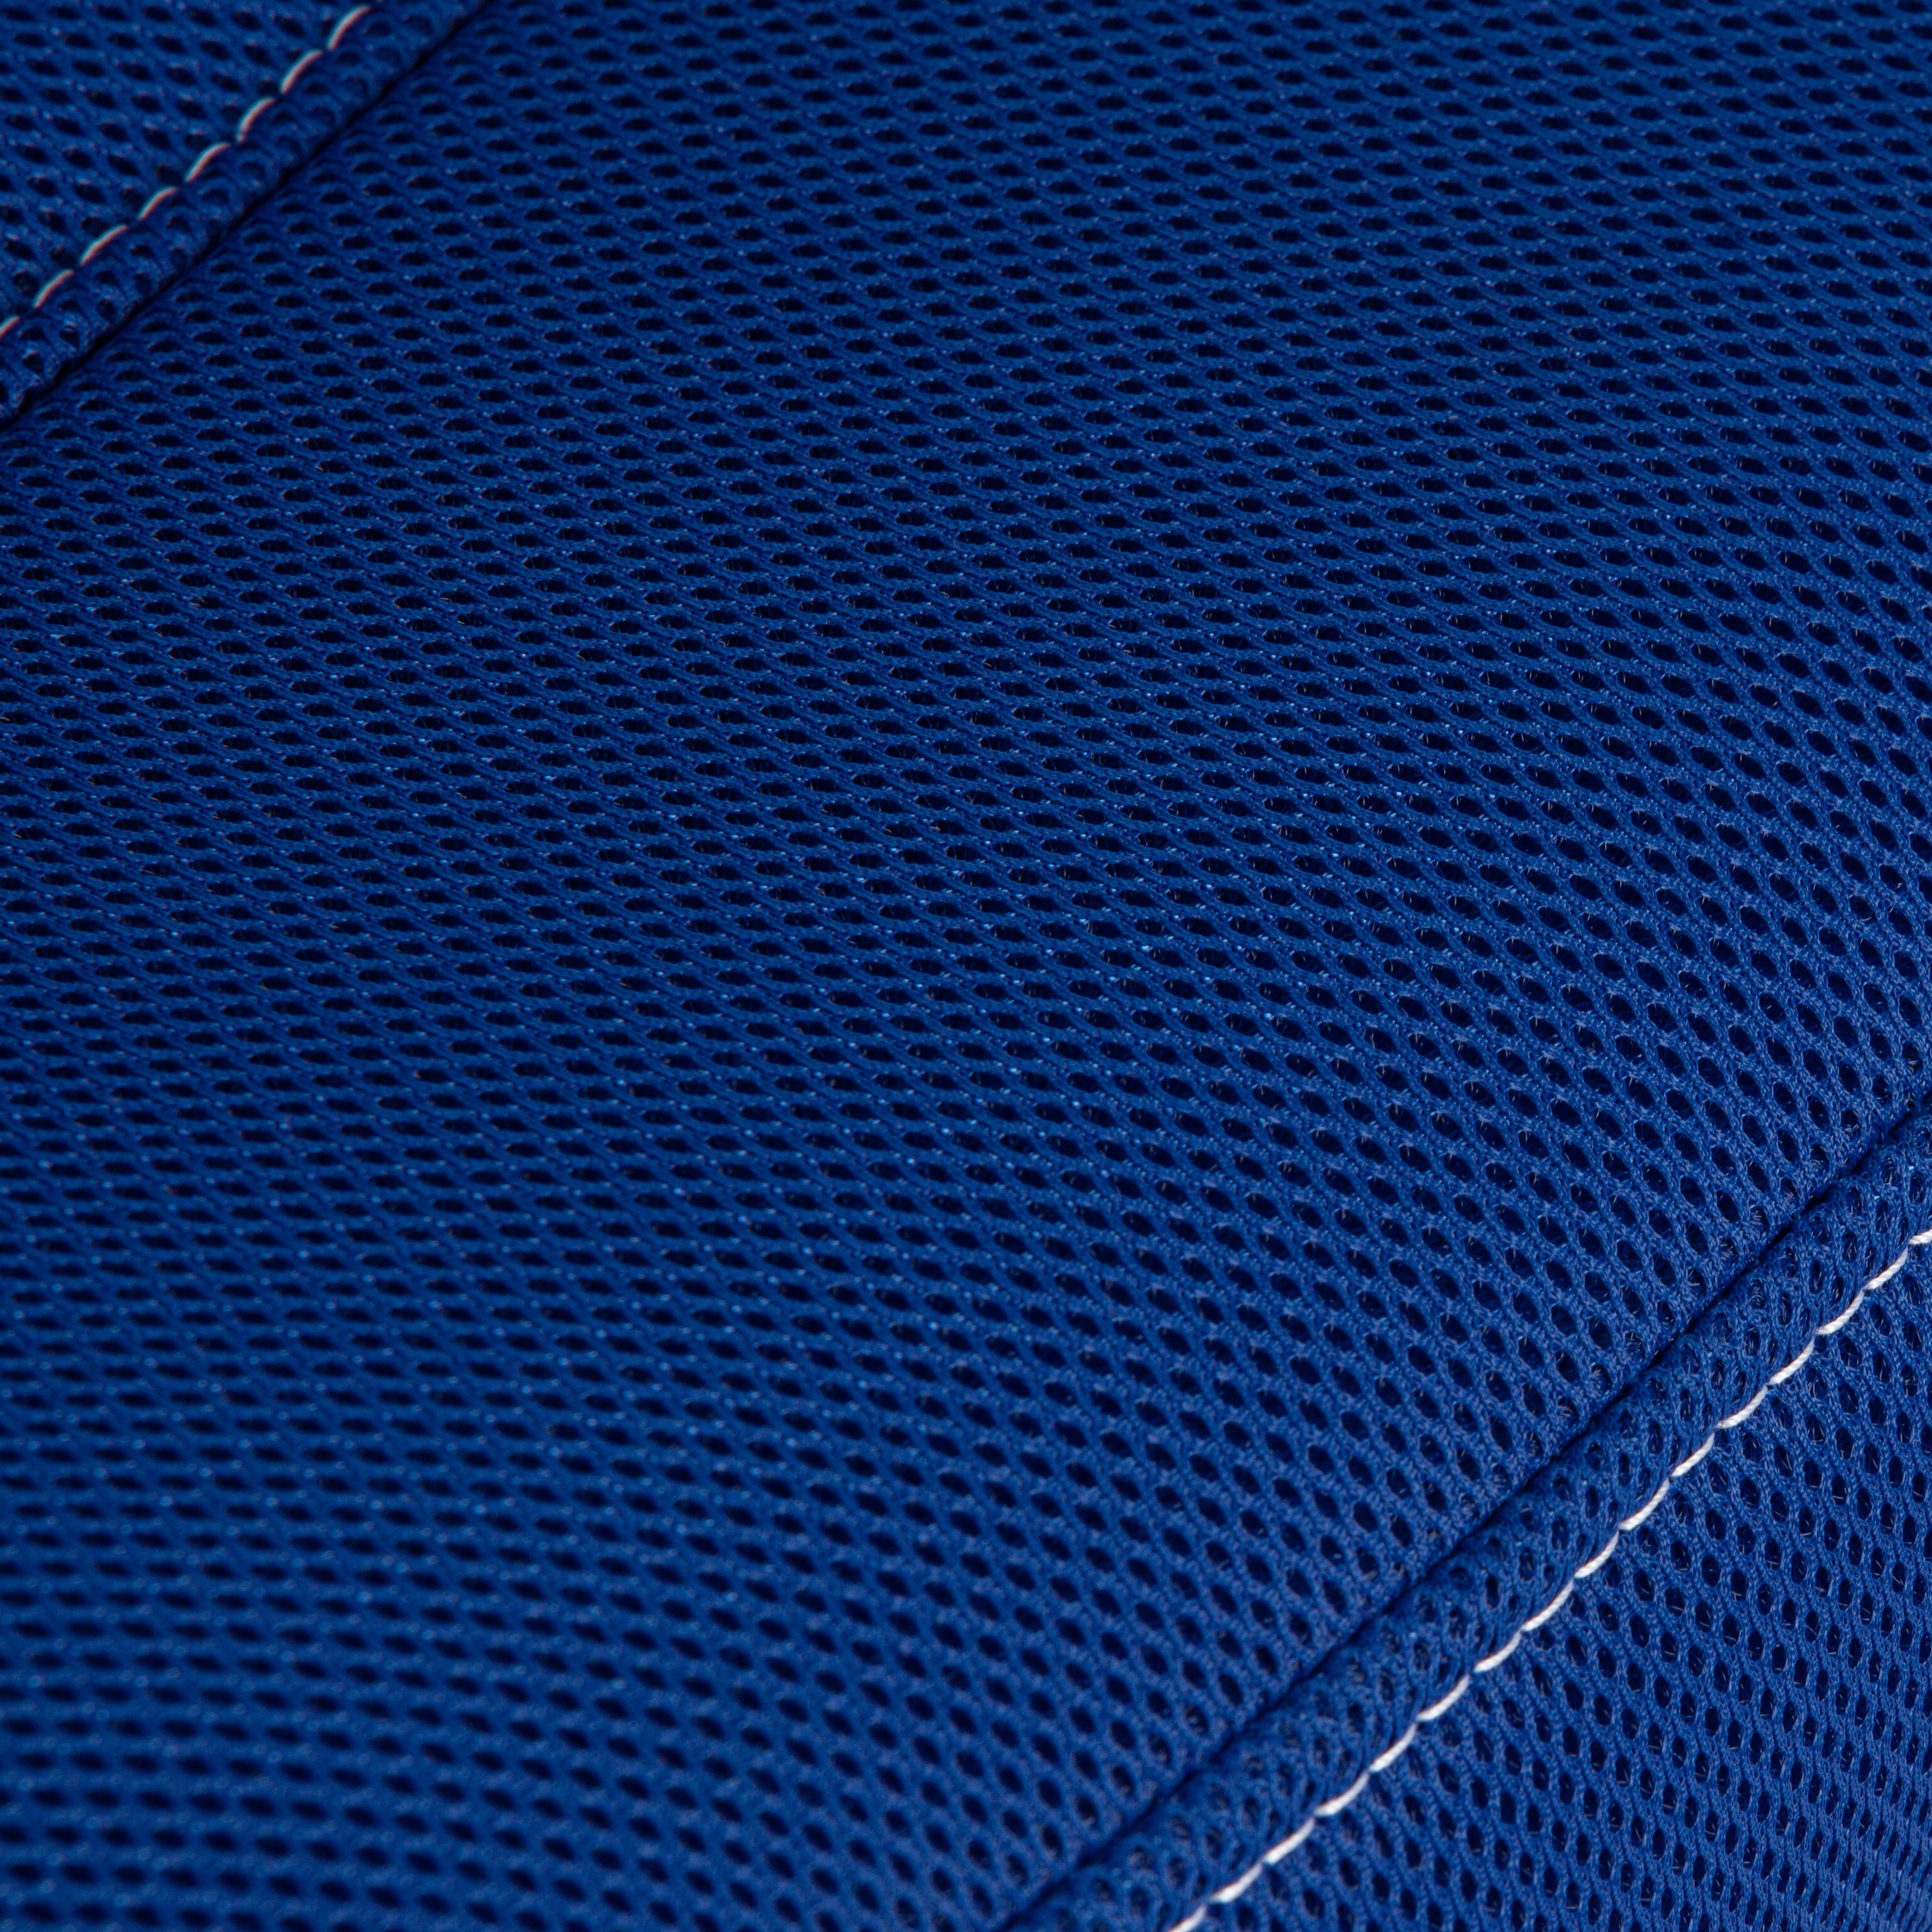 Кресло PARMA ткань, синий, TW-10